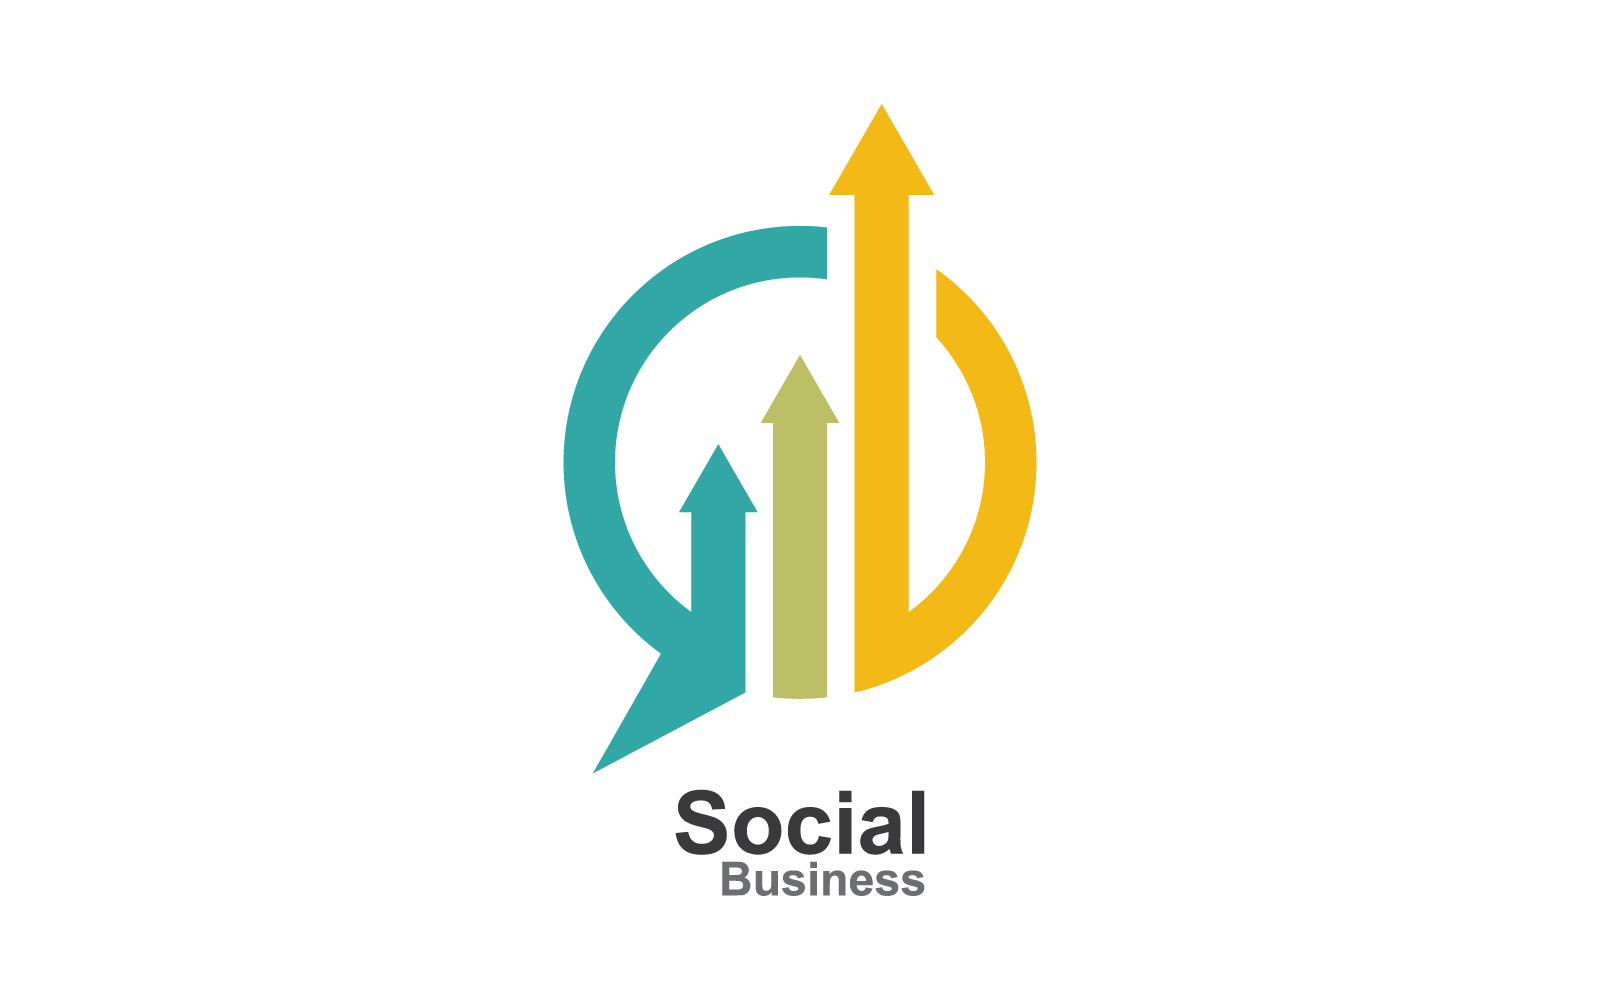 Business Finance logo design template vector